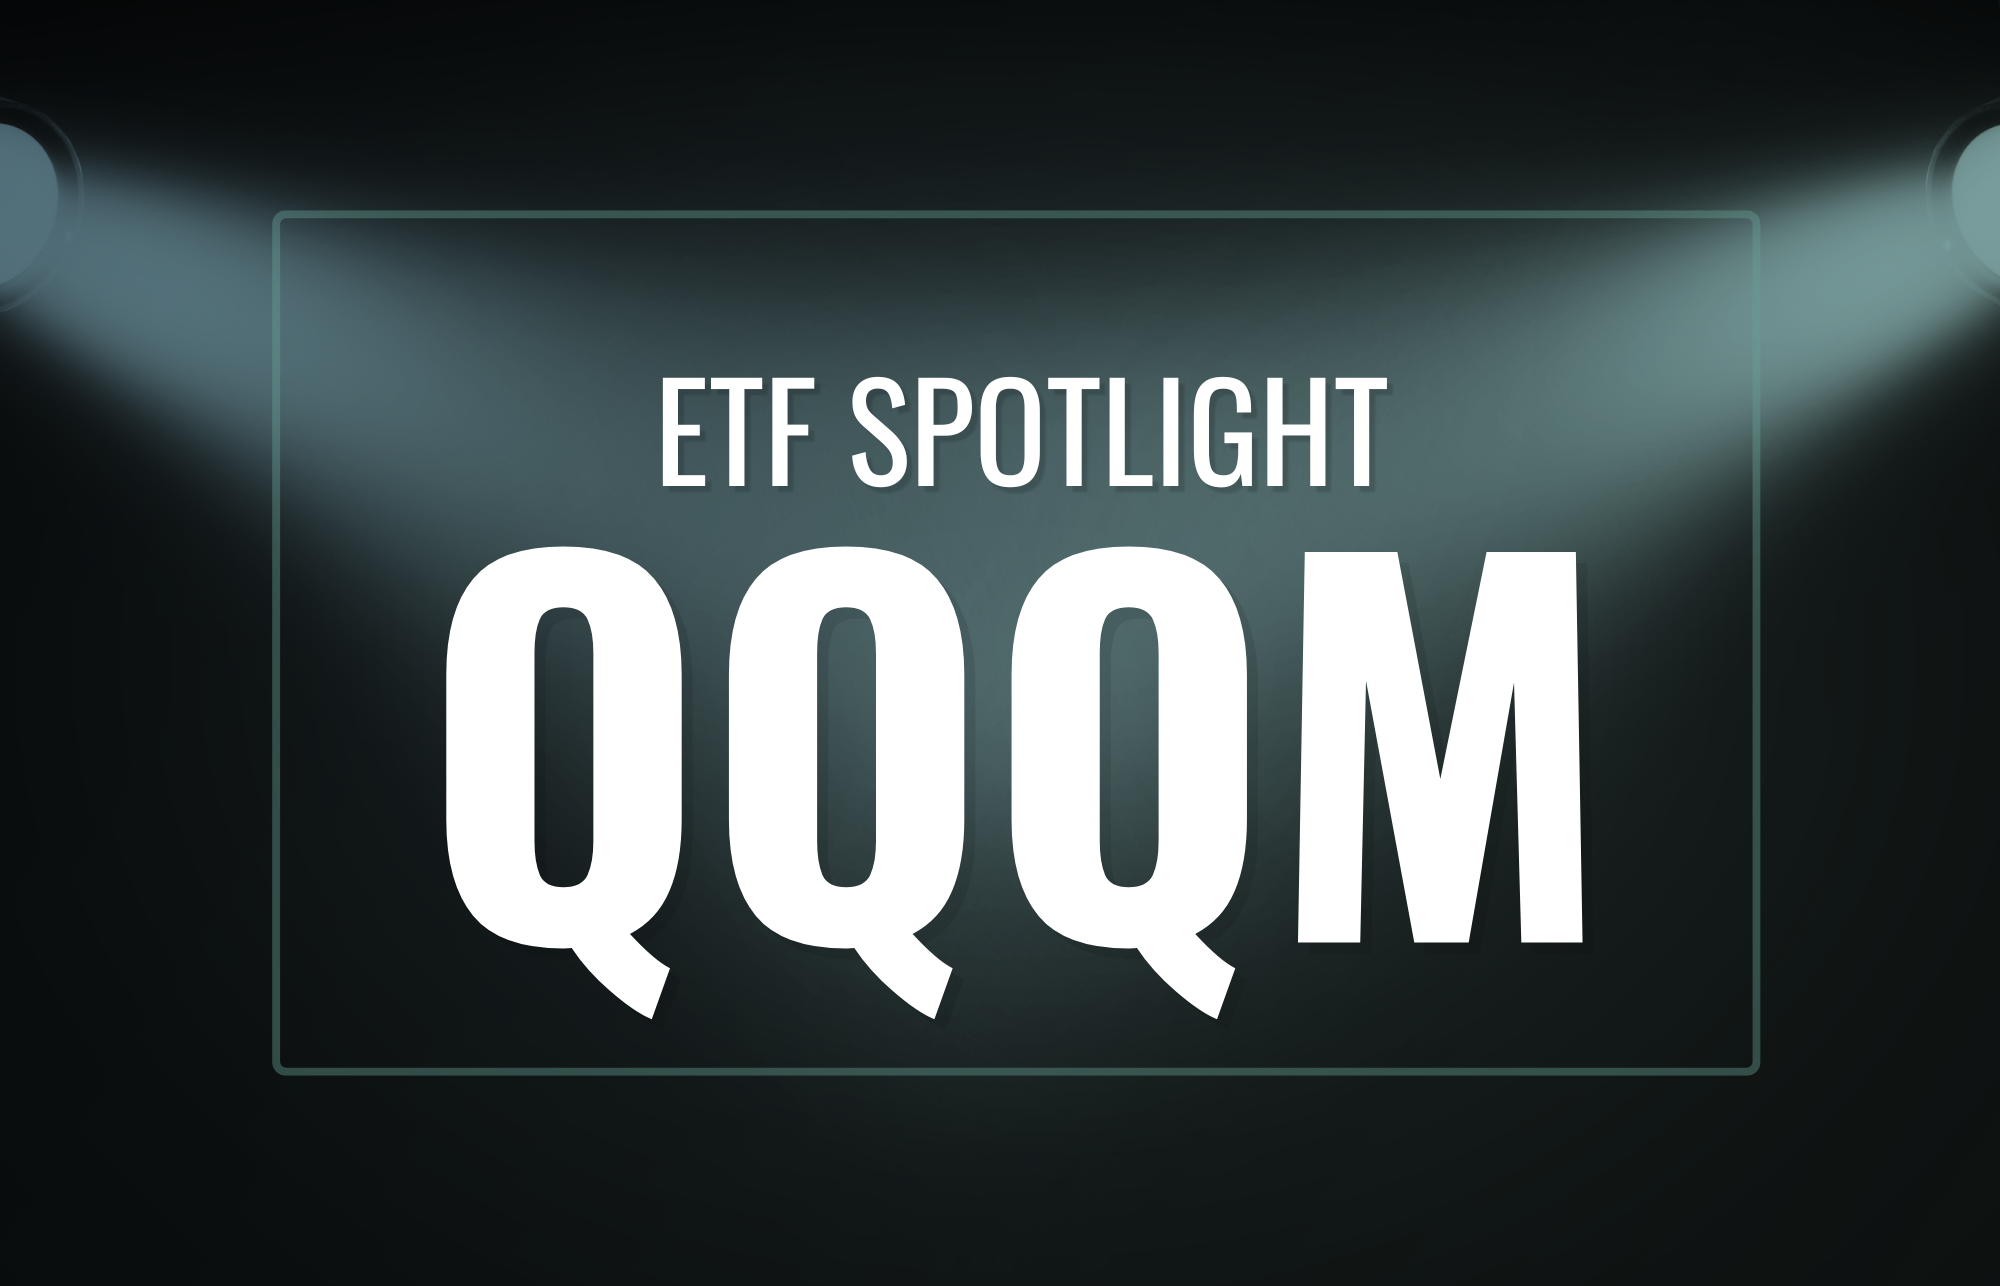 QQQM ETF Spotlight